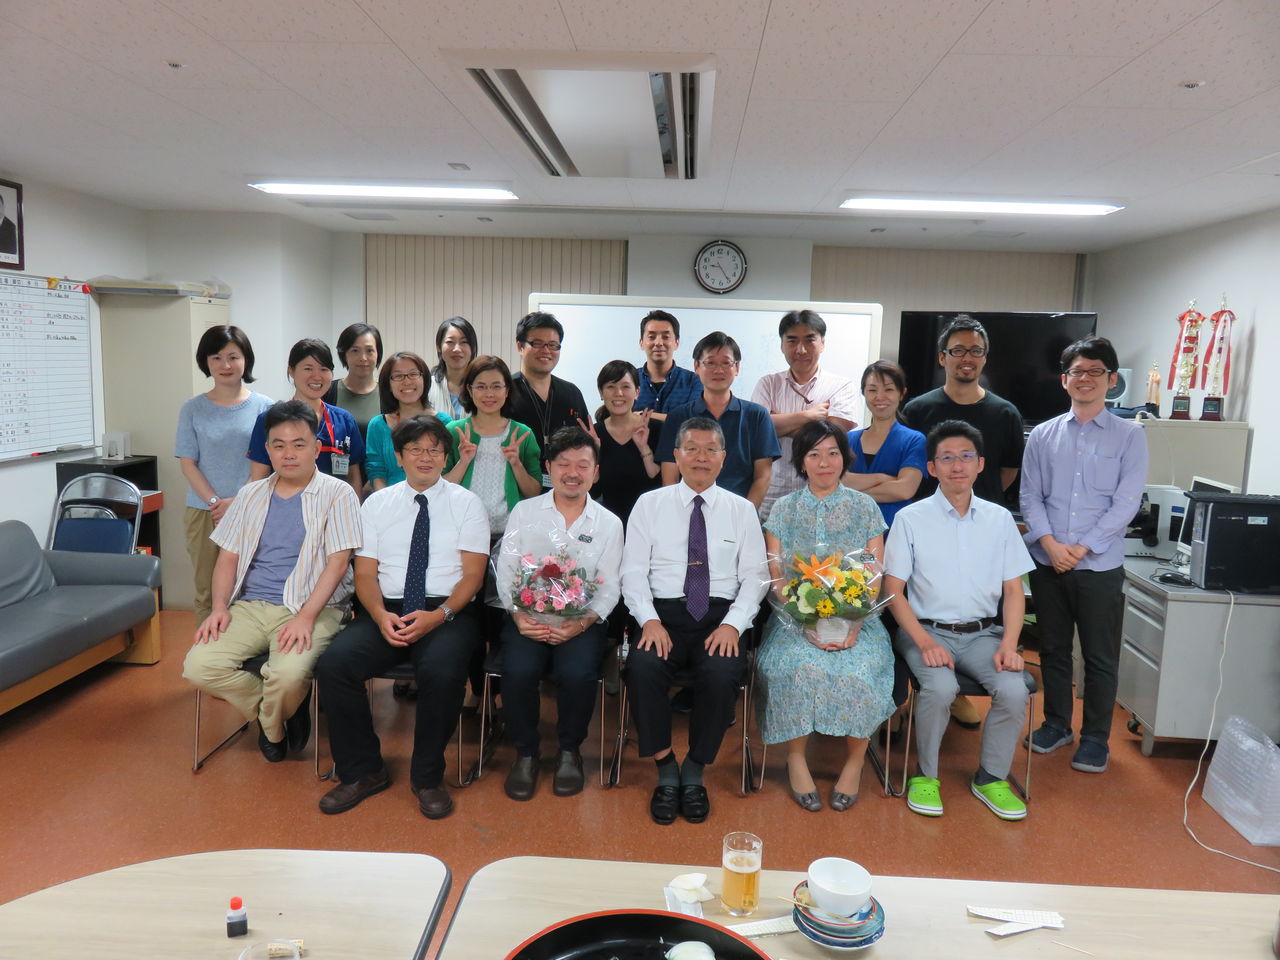 妹尾先生 築山先生の卒業式が行われました 長崎大学産婦人科のブログ